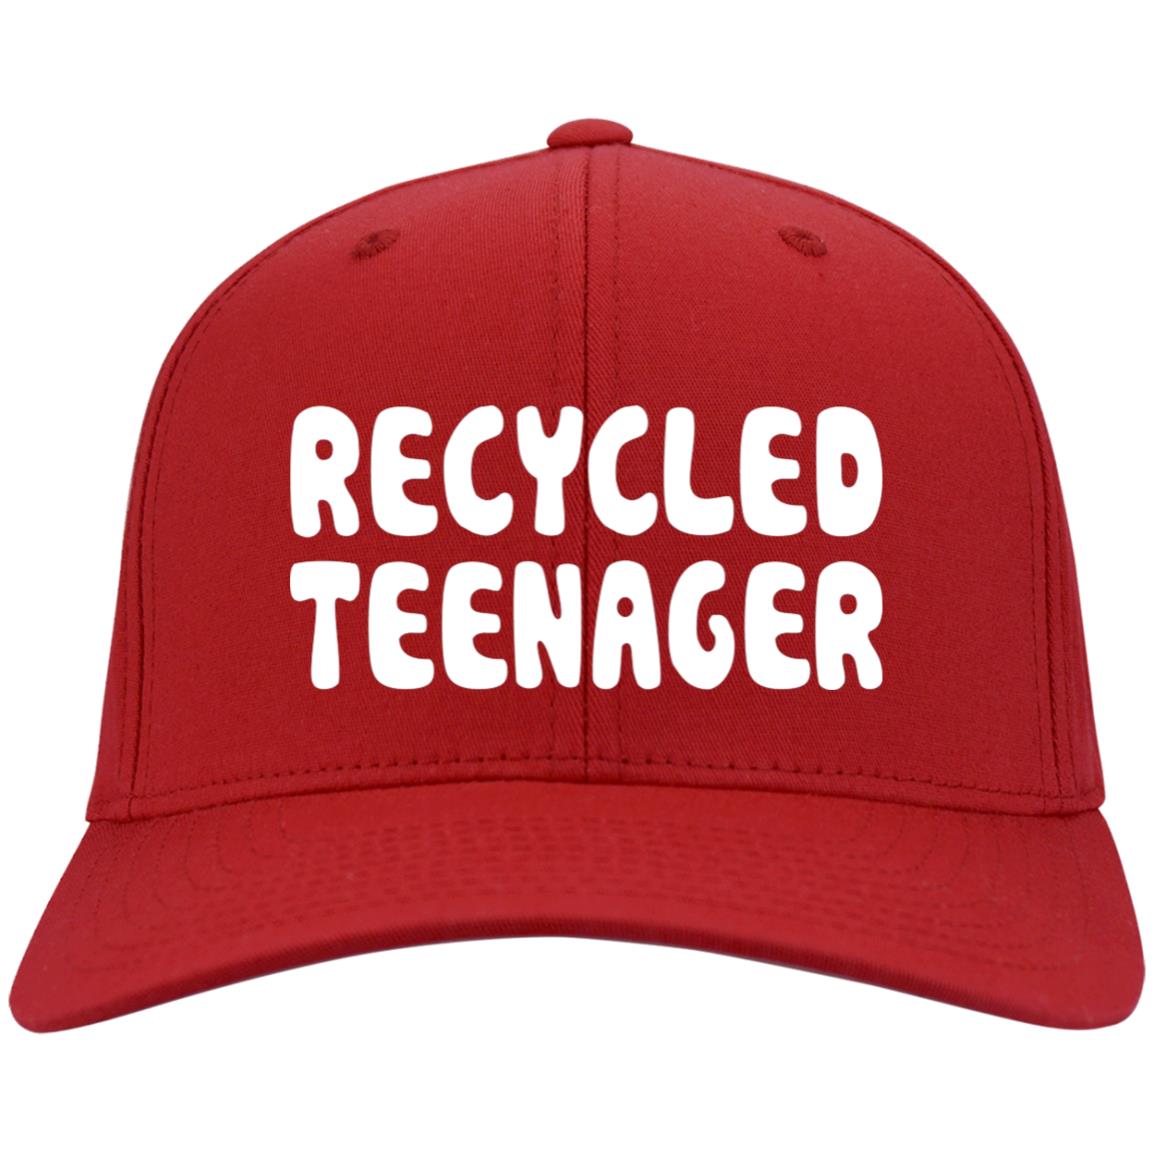 Recycled Teenager Hats | Teedragons.com - TeeDragons